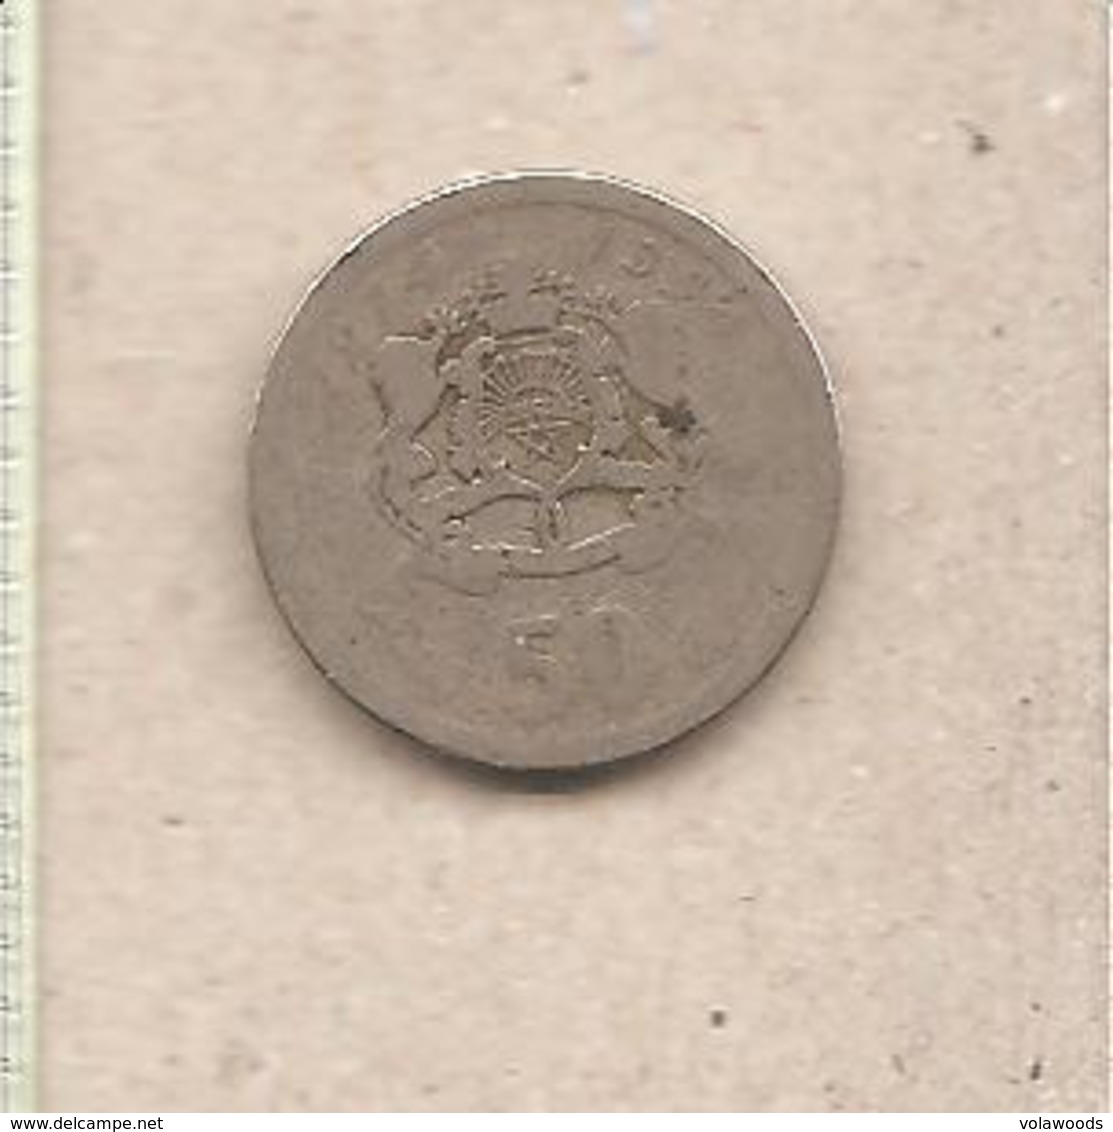 Marocco - Moneta Circolata Da 50 Santimat - 1974 - Marocco